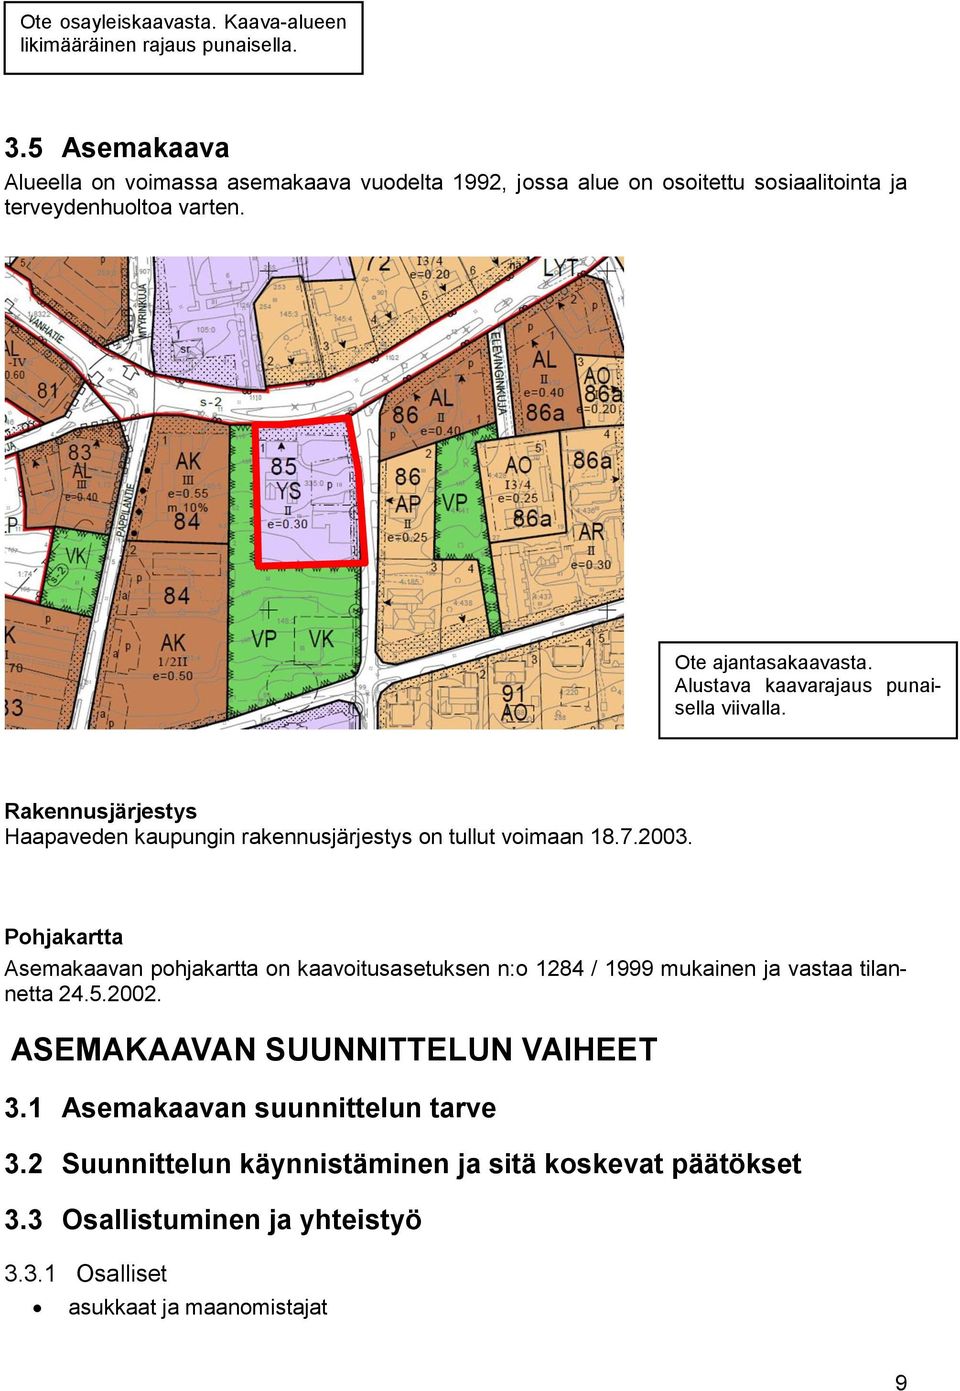 Alustava kaavarajaus punaisella viivalla. Rakennusjärjestys Haapaveden kaupungin rakennusjärjestys on tullut voimaan 18.7.2003.